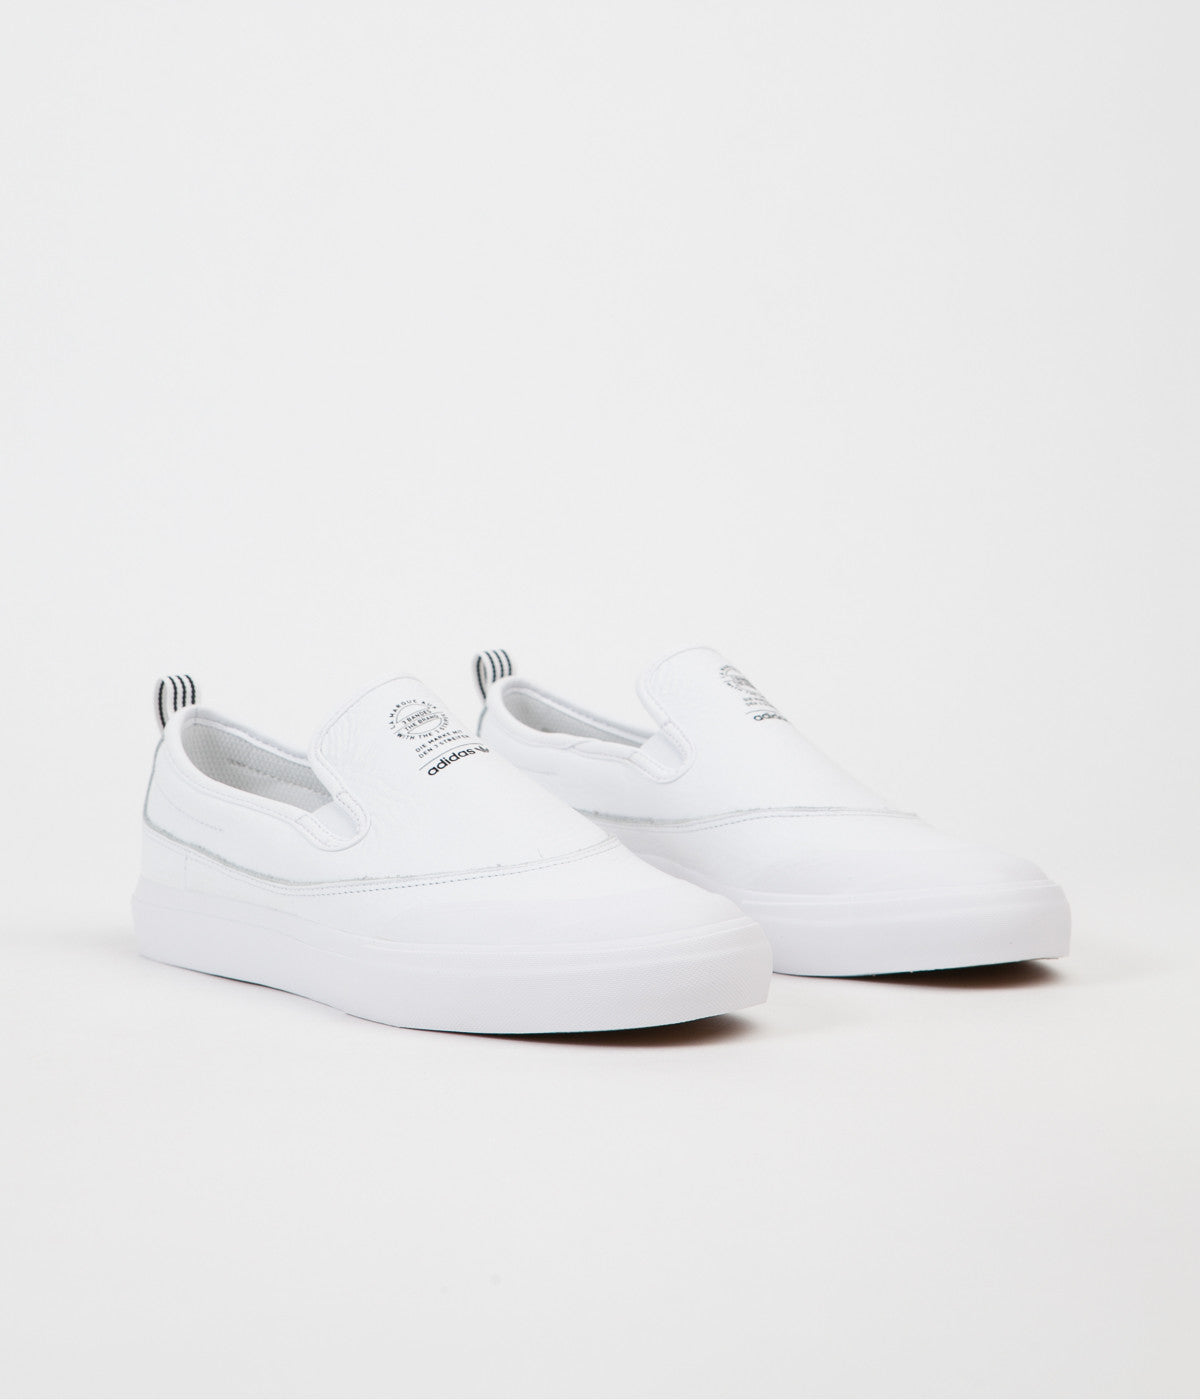 Adidas Matchcourt Slip On Shoes - White / White / White | Flatspot